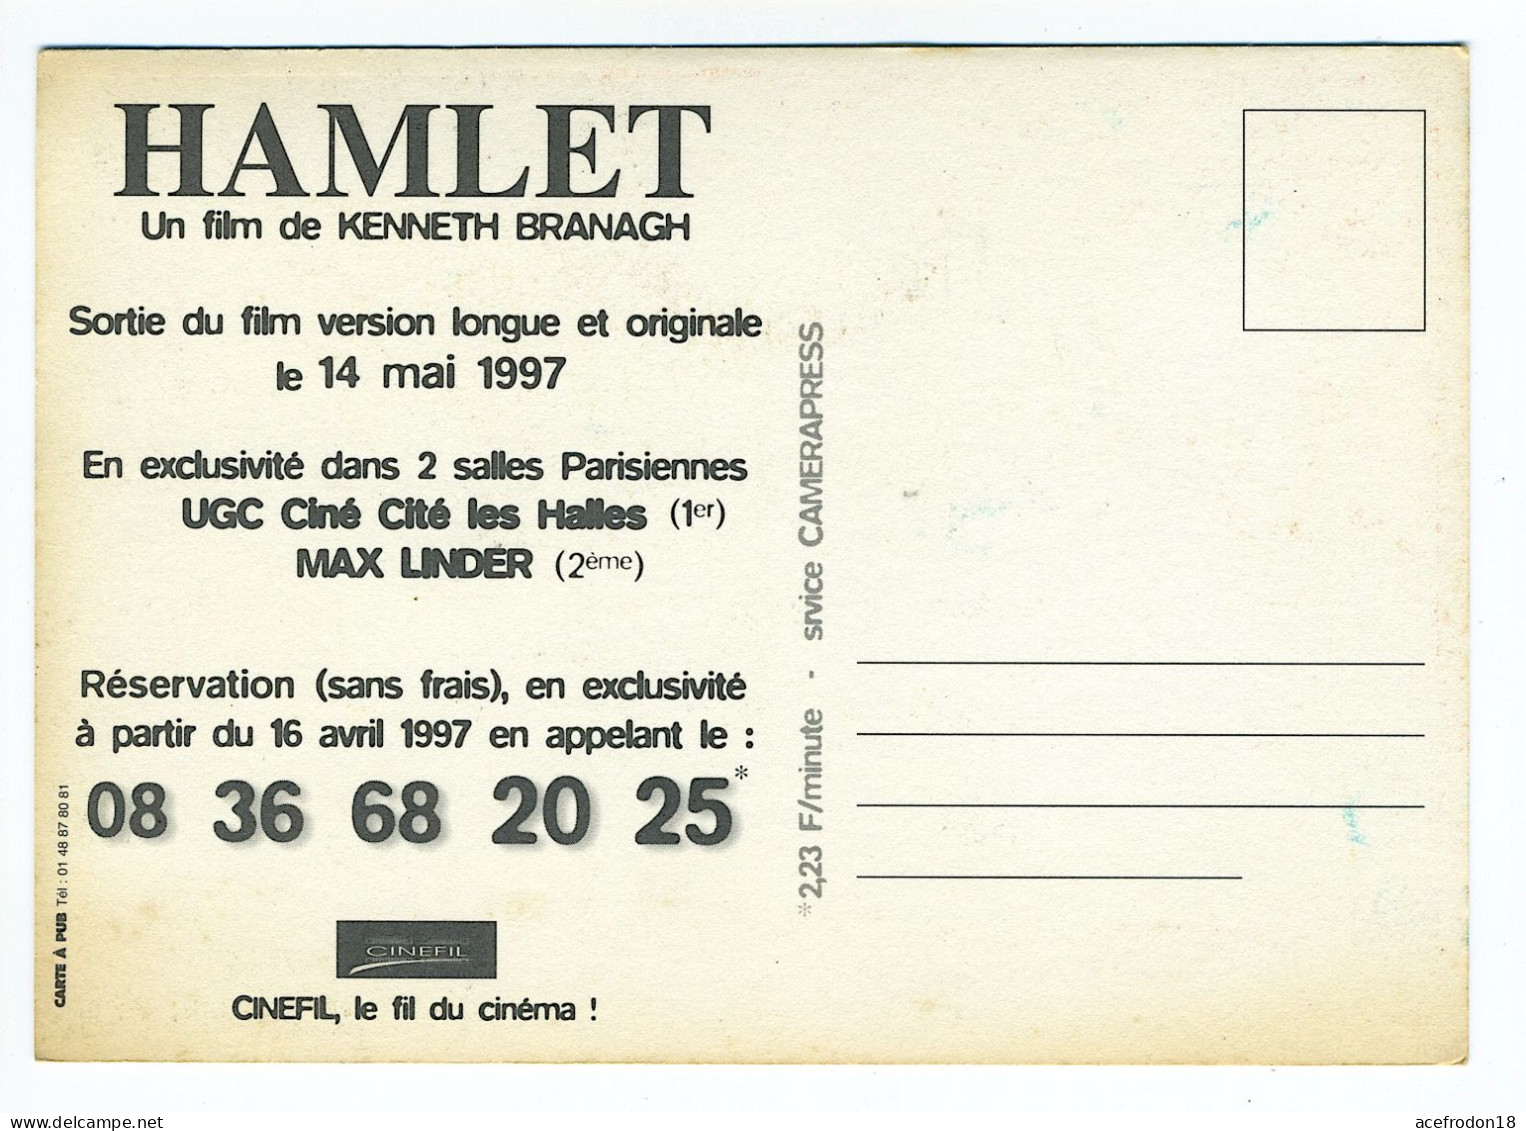 AFFICHES DE FILM - HAMLET FILM DE KENNETH BRANAGH 1997 - Manifesti Su Carta